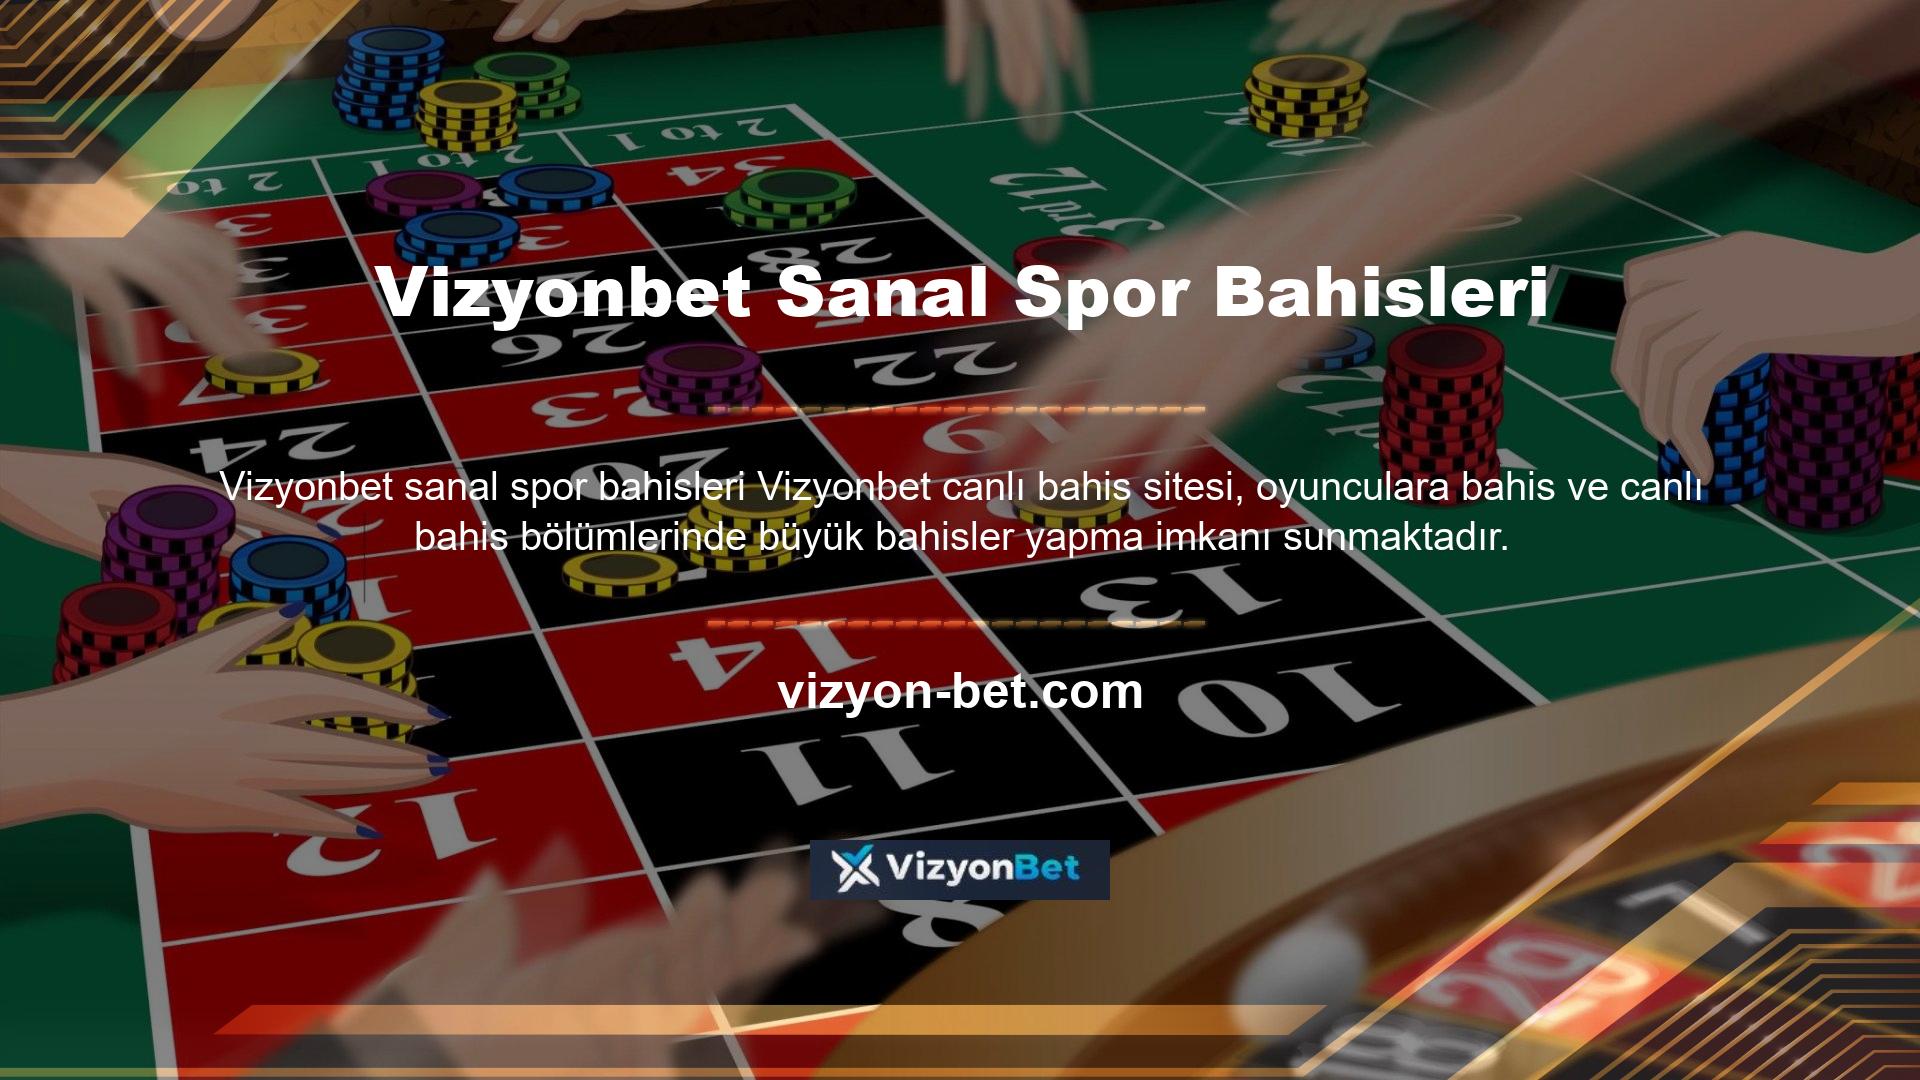 Ayrıca Vizyonbet yeni adresi sanal spor bahisleri yeni adresi olan canlı casino sitesi, son yılların en yüksek sanal bahislerinden bazılarıyla bilinen sanal bahis seçeneklerine erişim sağlıyor